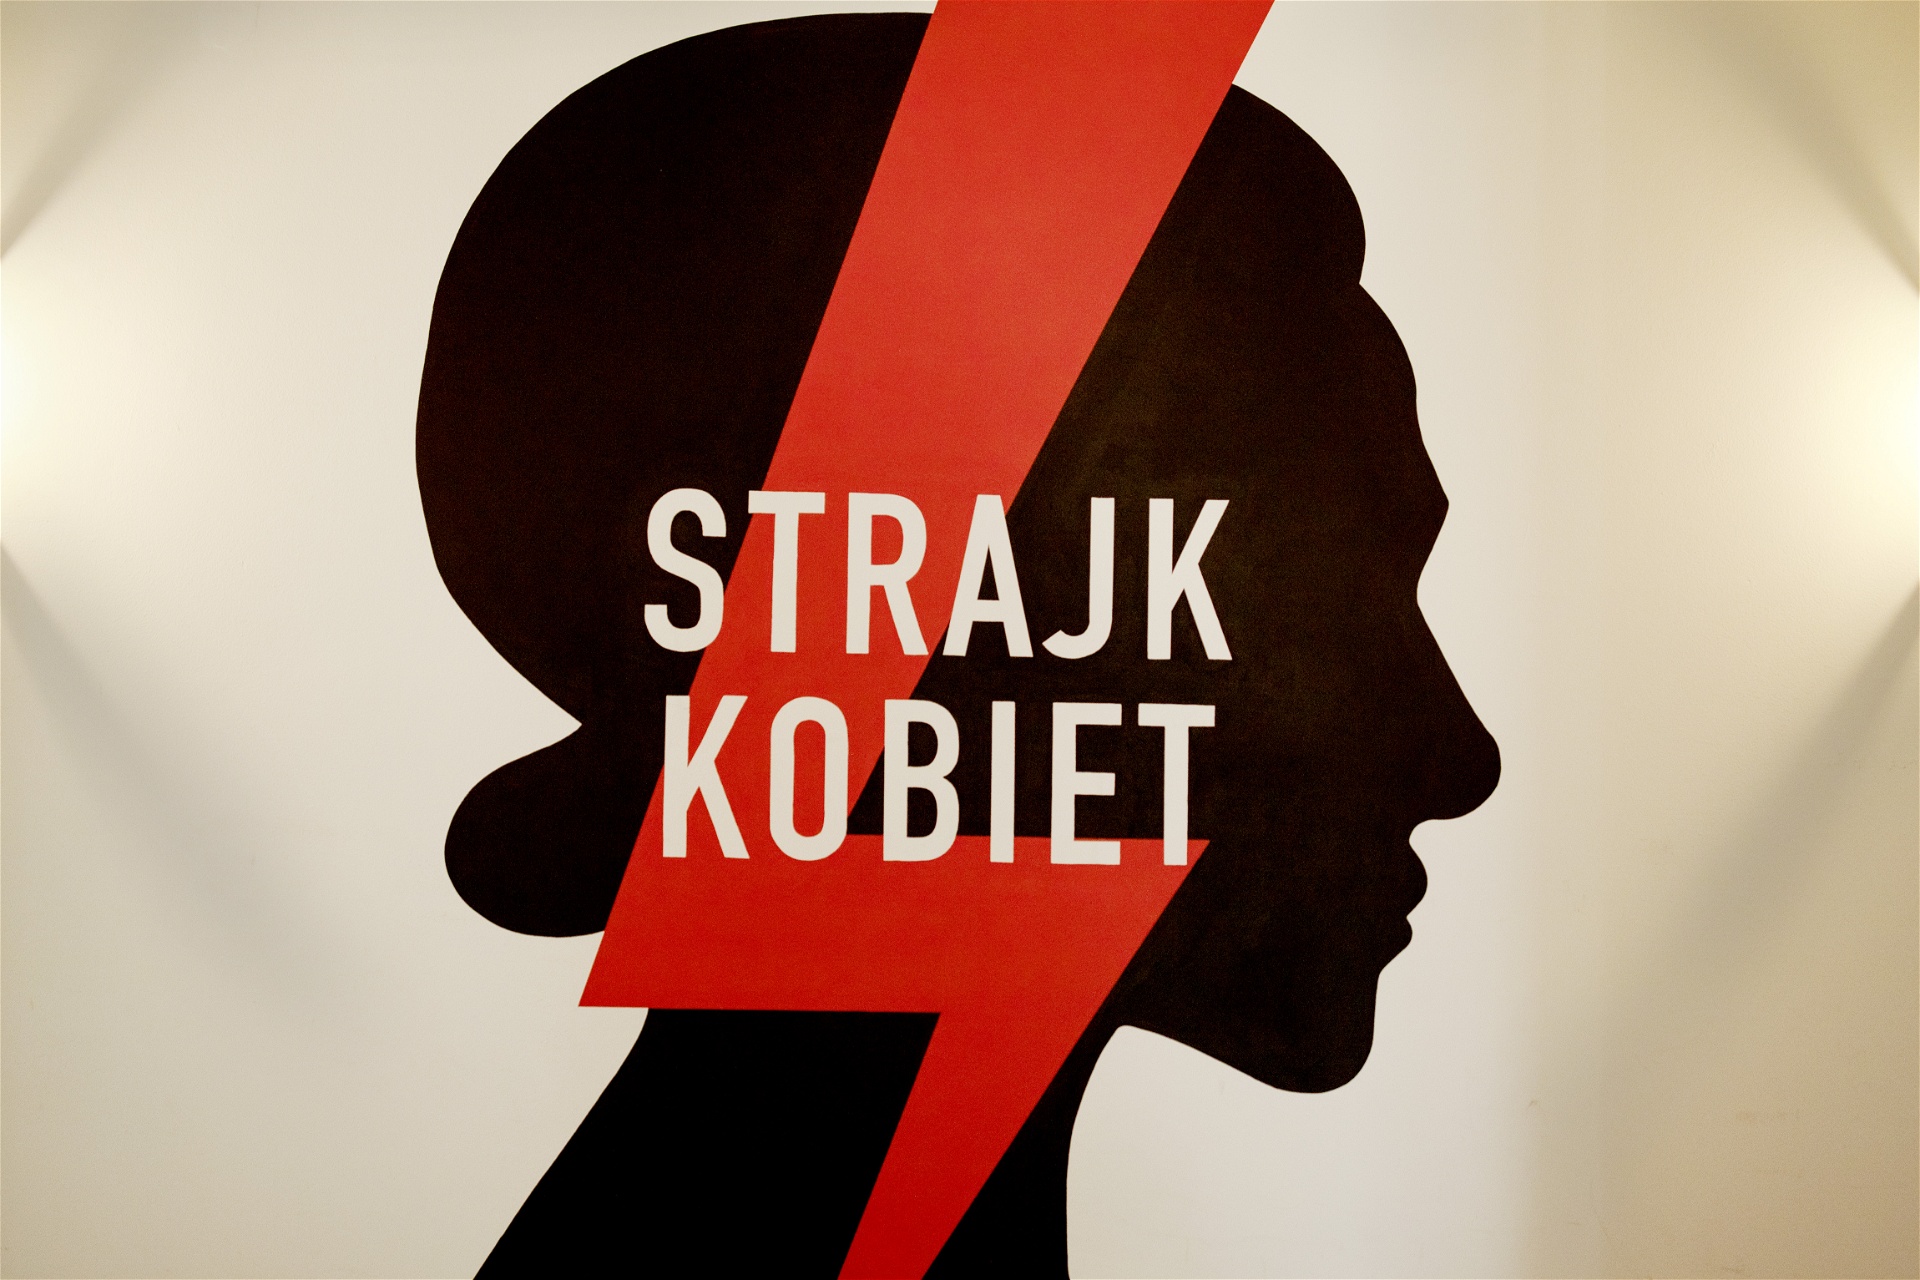 Kvinnorrättsorganisationen Ogólnopolski Strajk Kobiet (Polsk kvinnostrejk) grundades 2016 i protest mot Polens strikta abortlagar. Sedan dess har lagstiftningen skärpts ytterligare. Foto: Åsa Sjöström